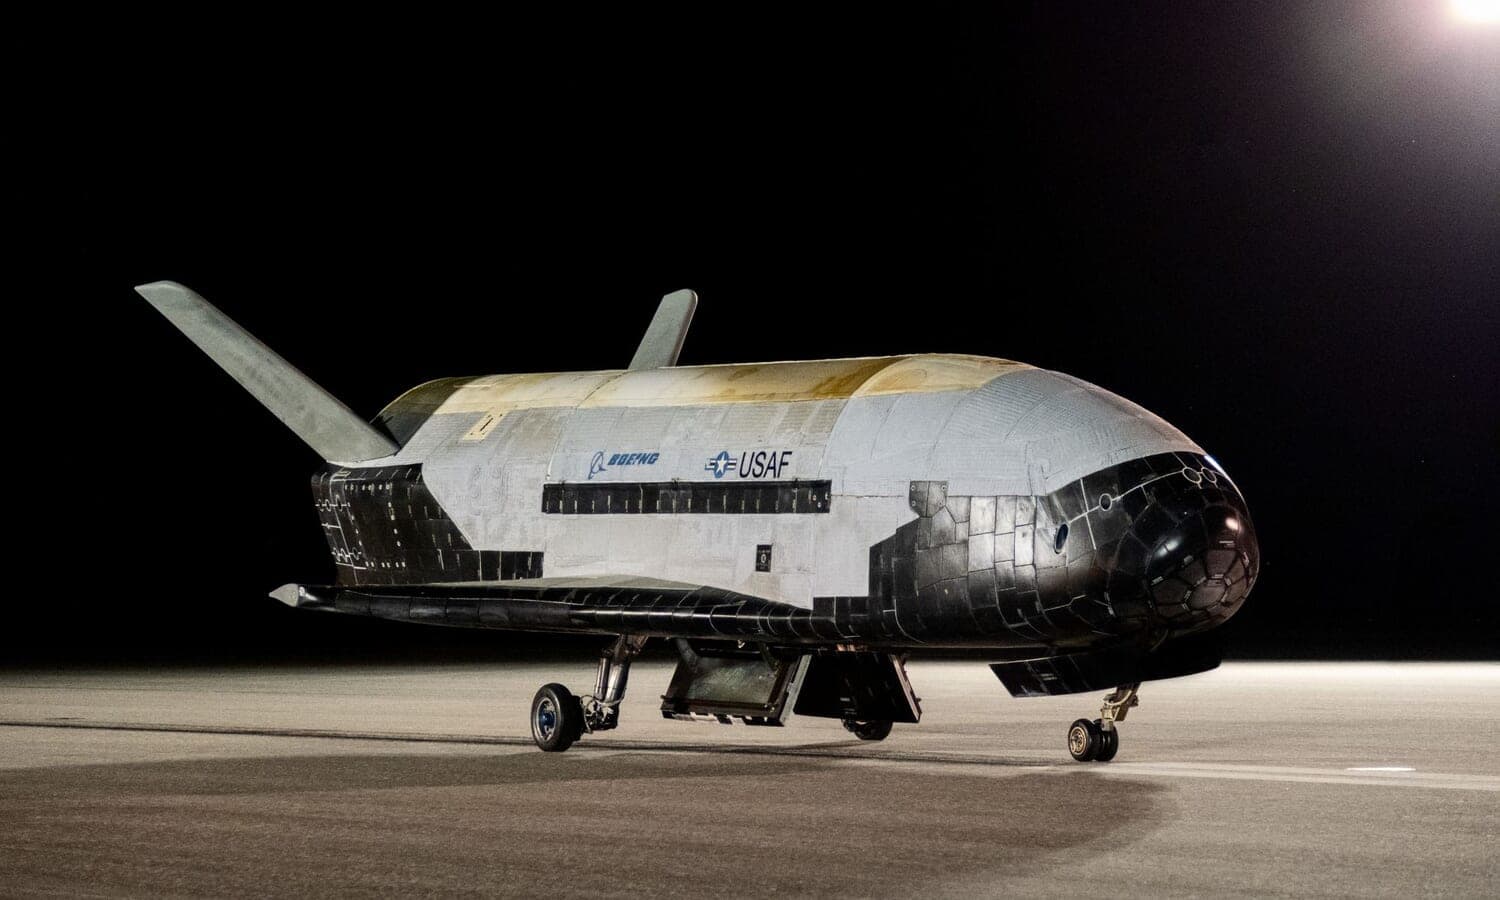 908日ぶりに軌道に戻ったスペースプレーン「X-37B」。そこで何をしていたのか？それは極秘の任務だ